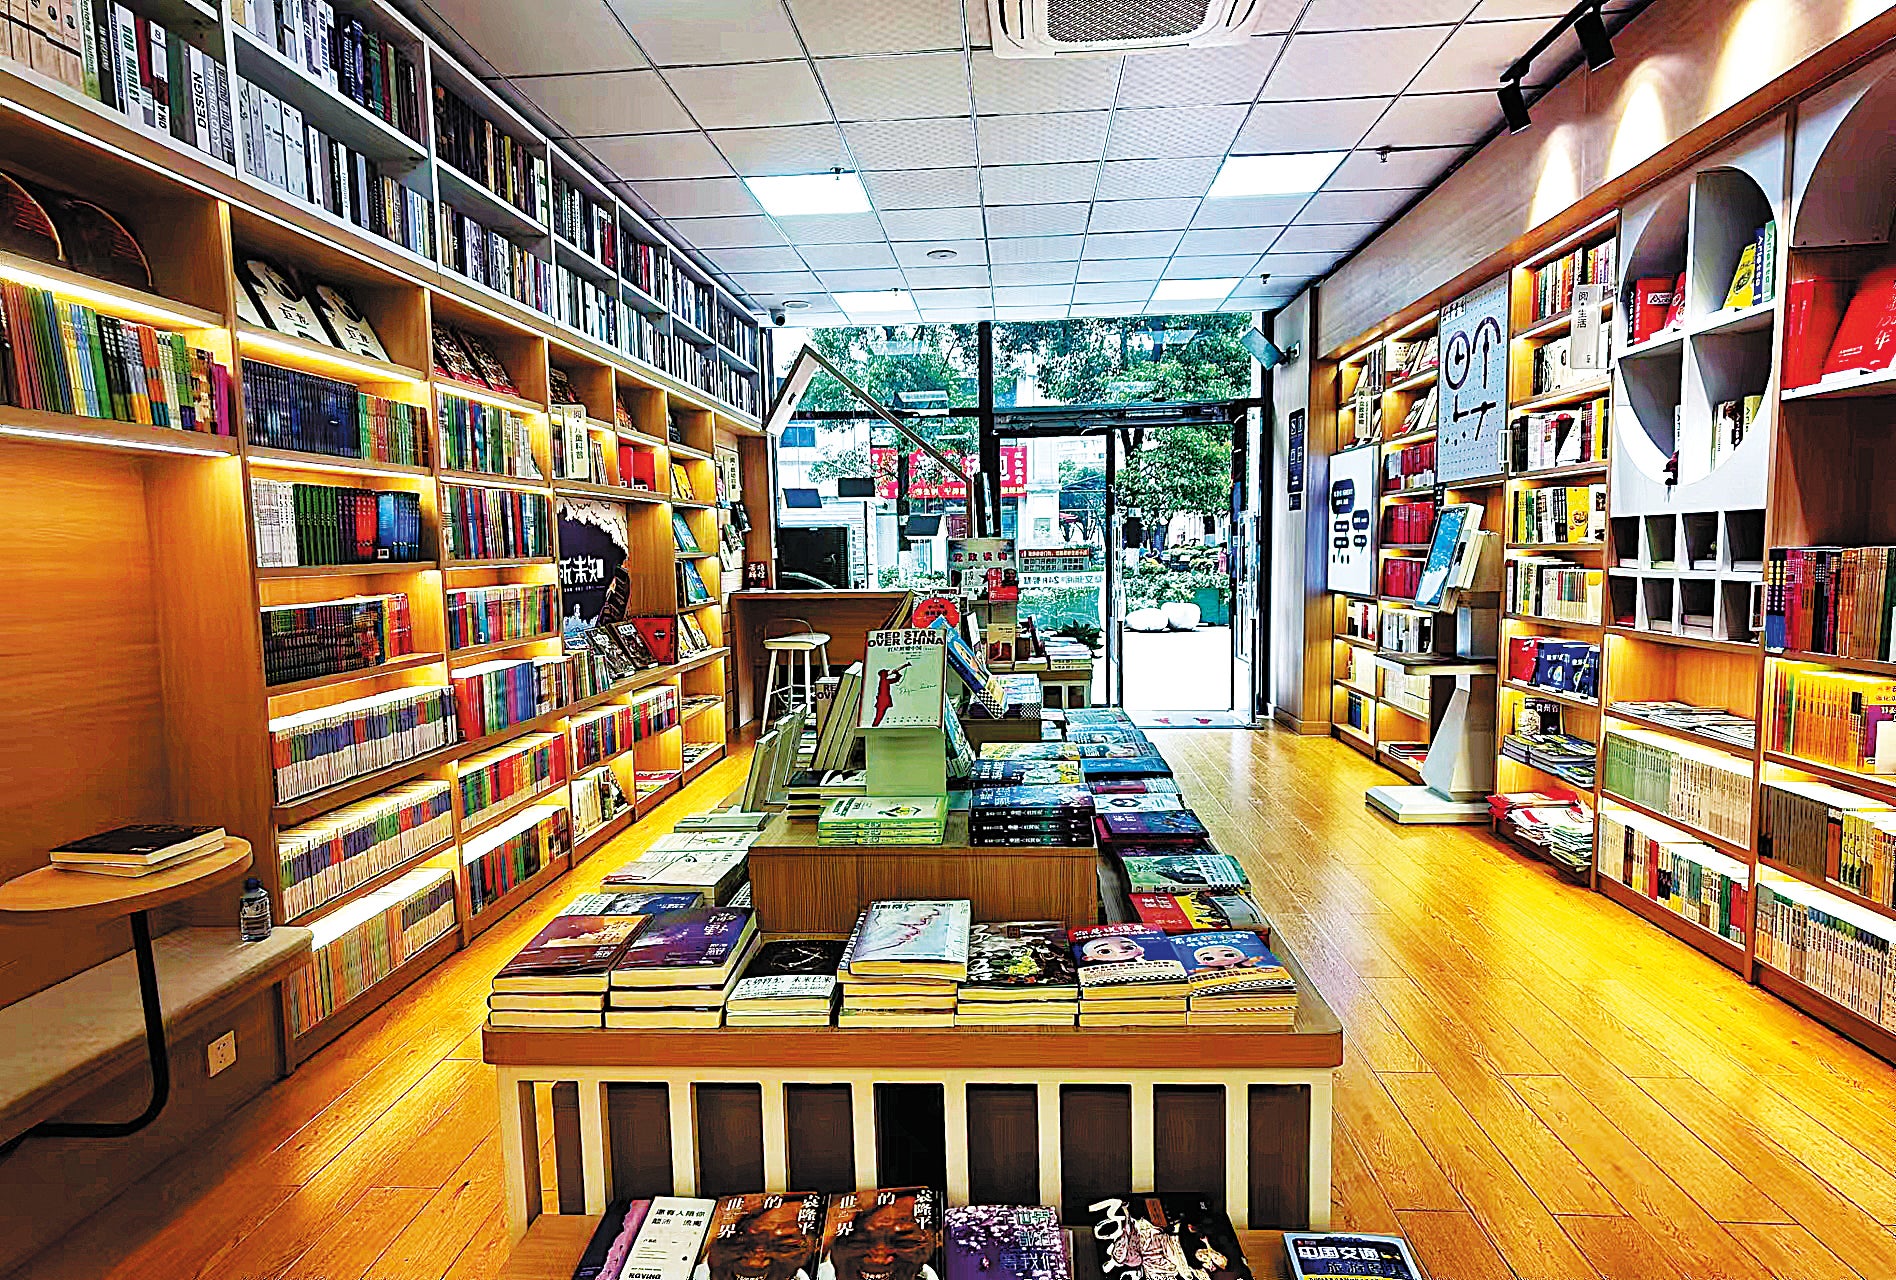 The 24-hour smart bookstore run by Xinhua Bookstore in the Touqiao community in Guiyang, Guizhou province